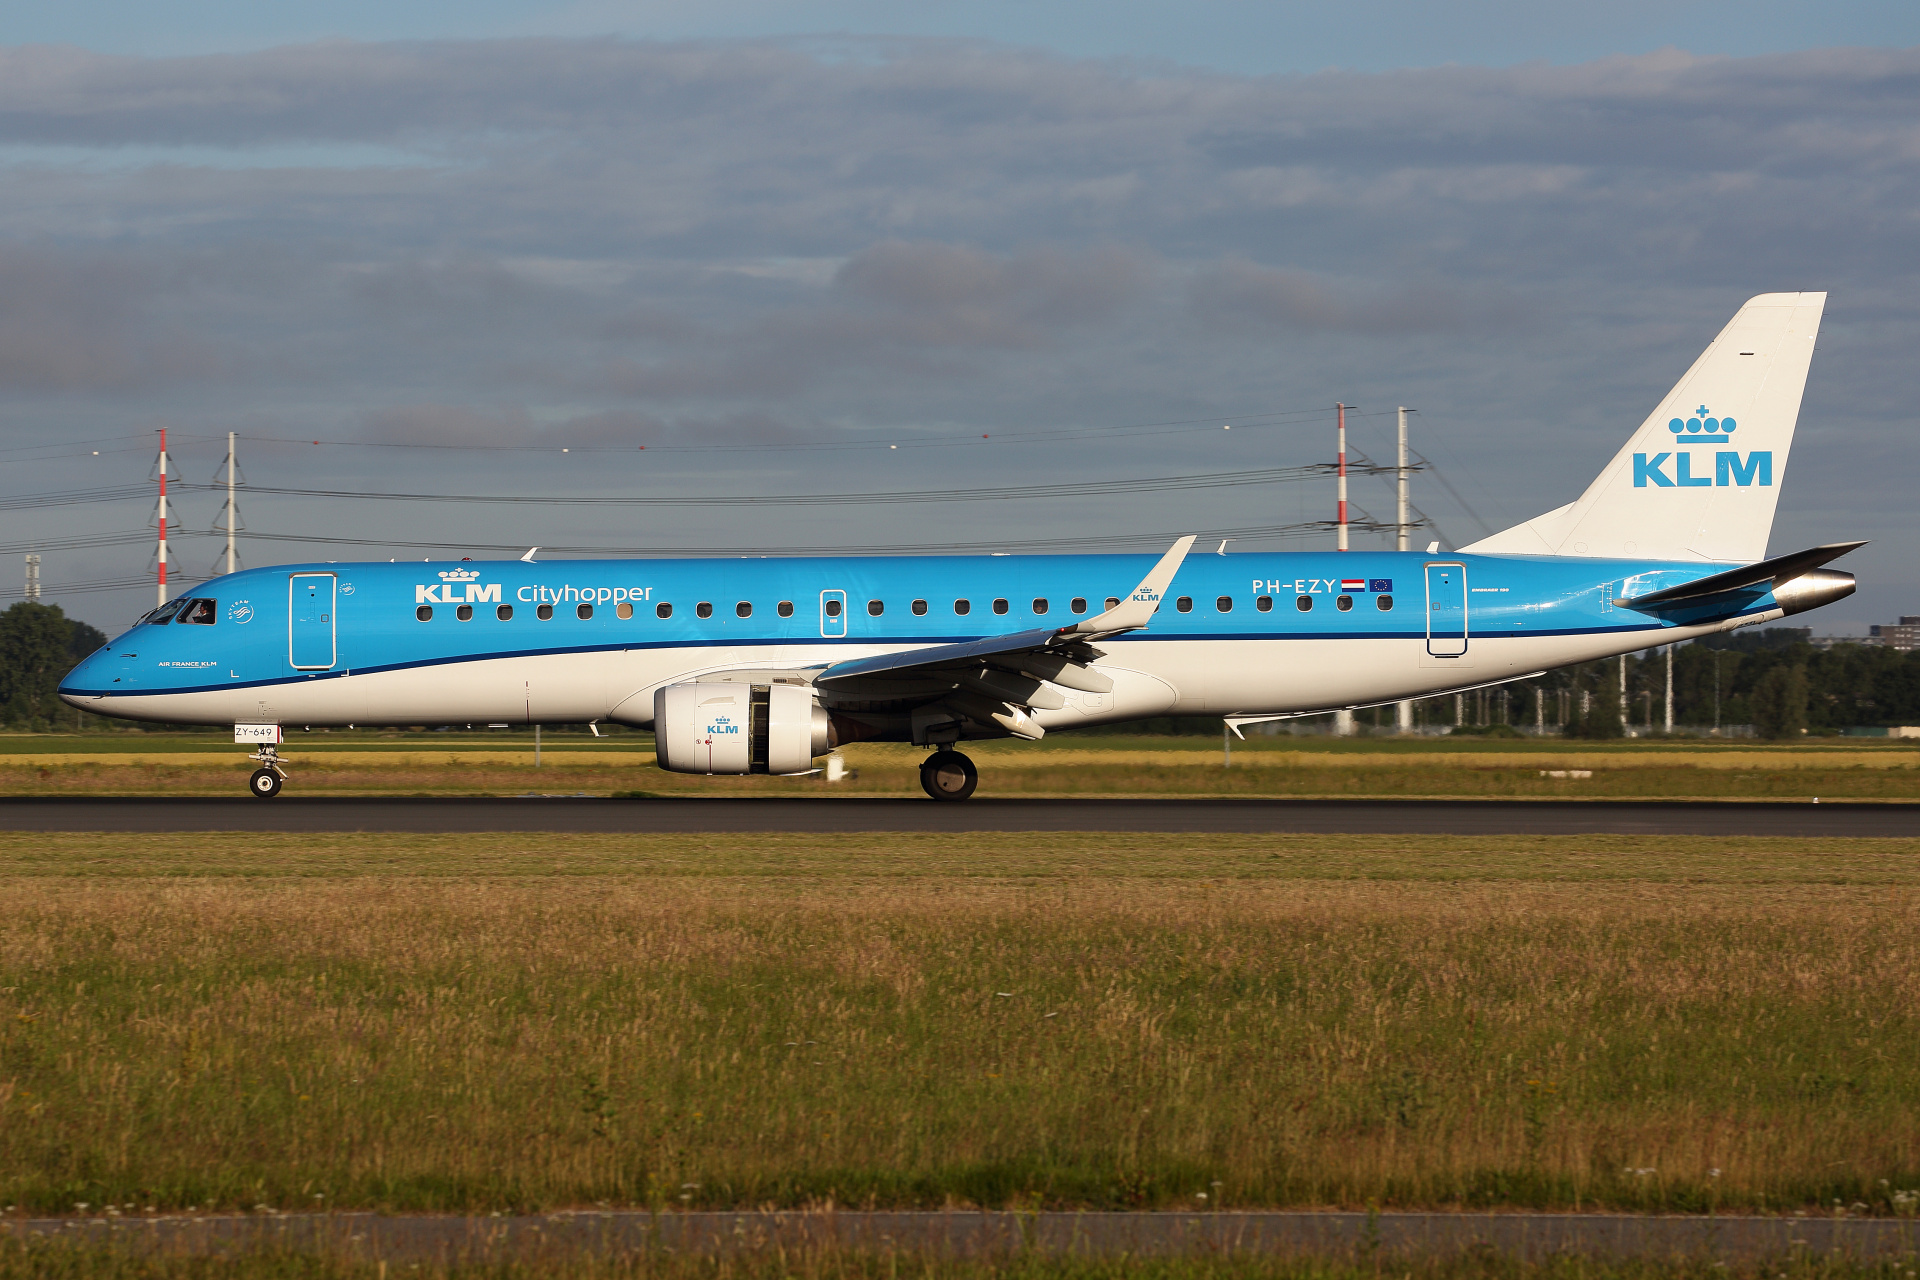 PH-EZY (Aircraft » Schiphol Spotting » Embraer E190 » KLM Cityhopper)